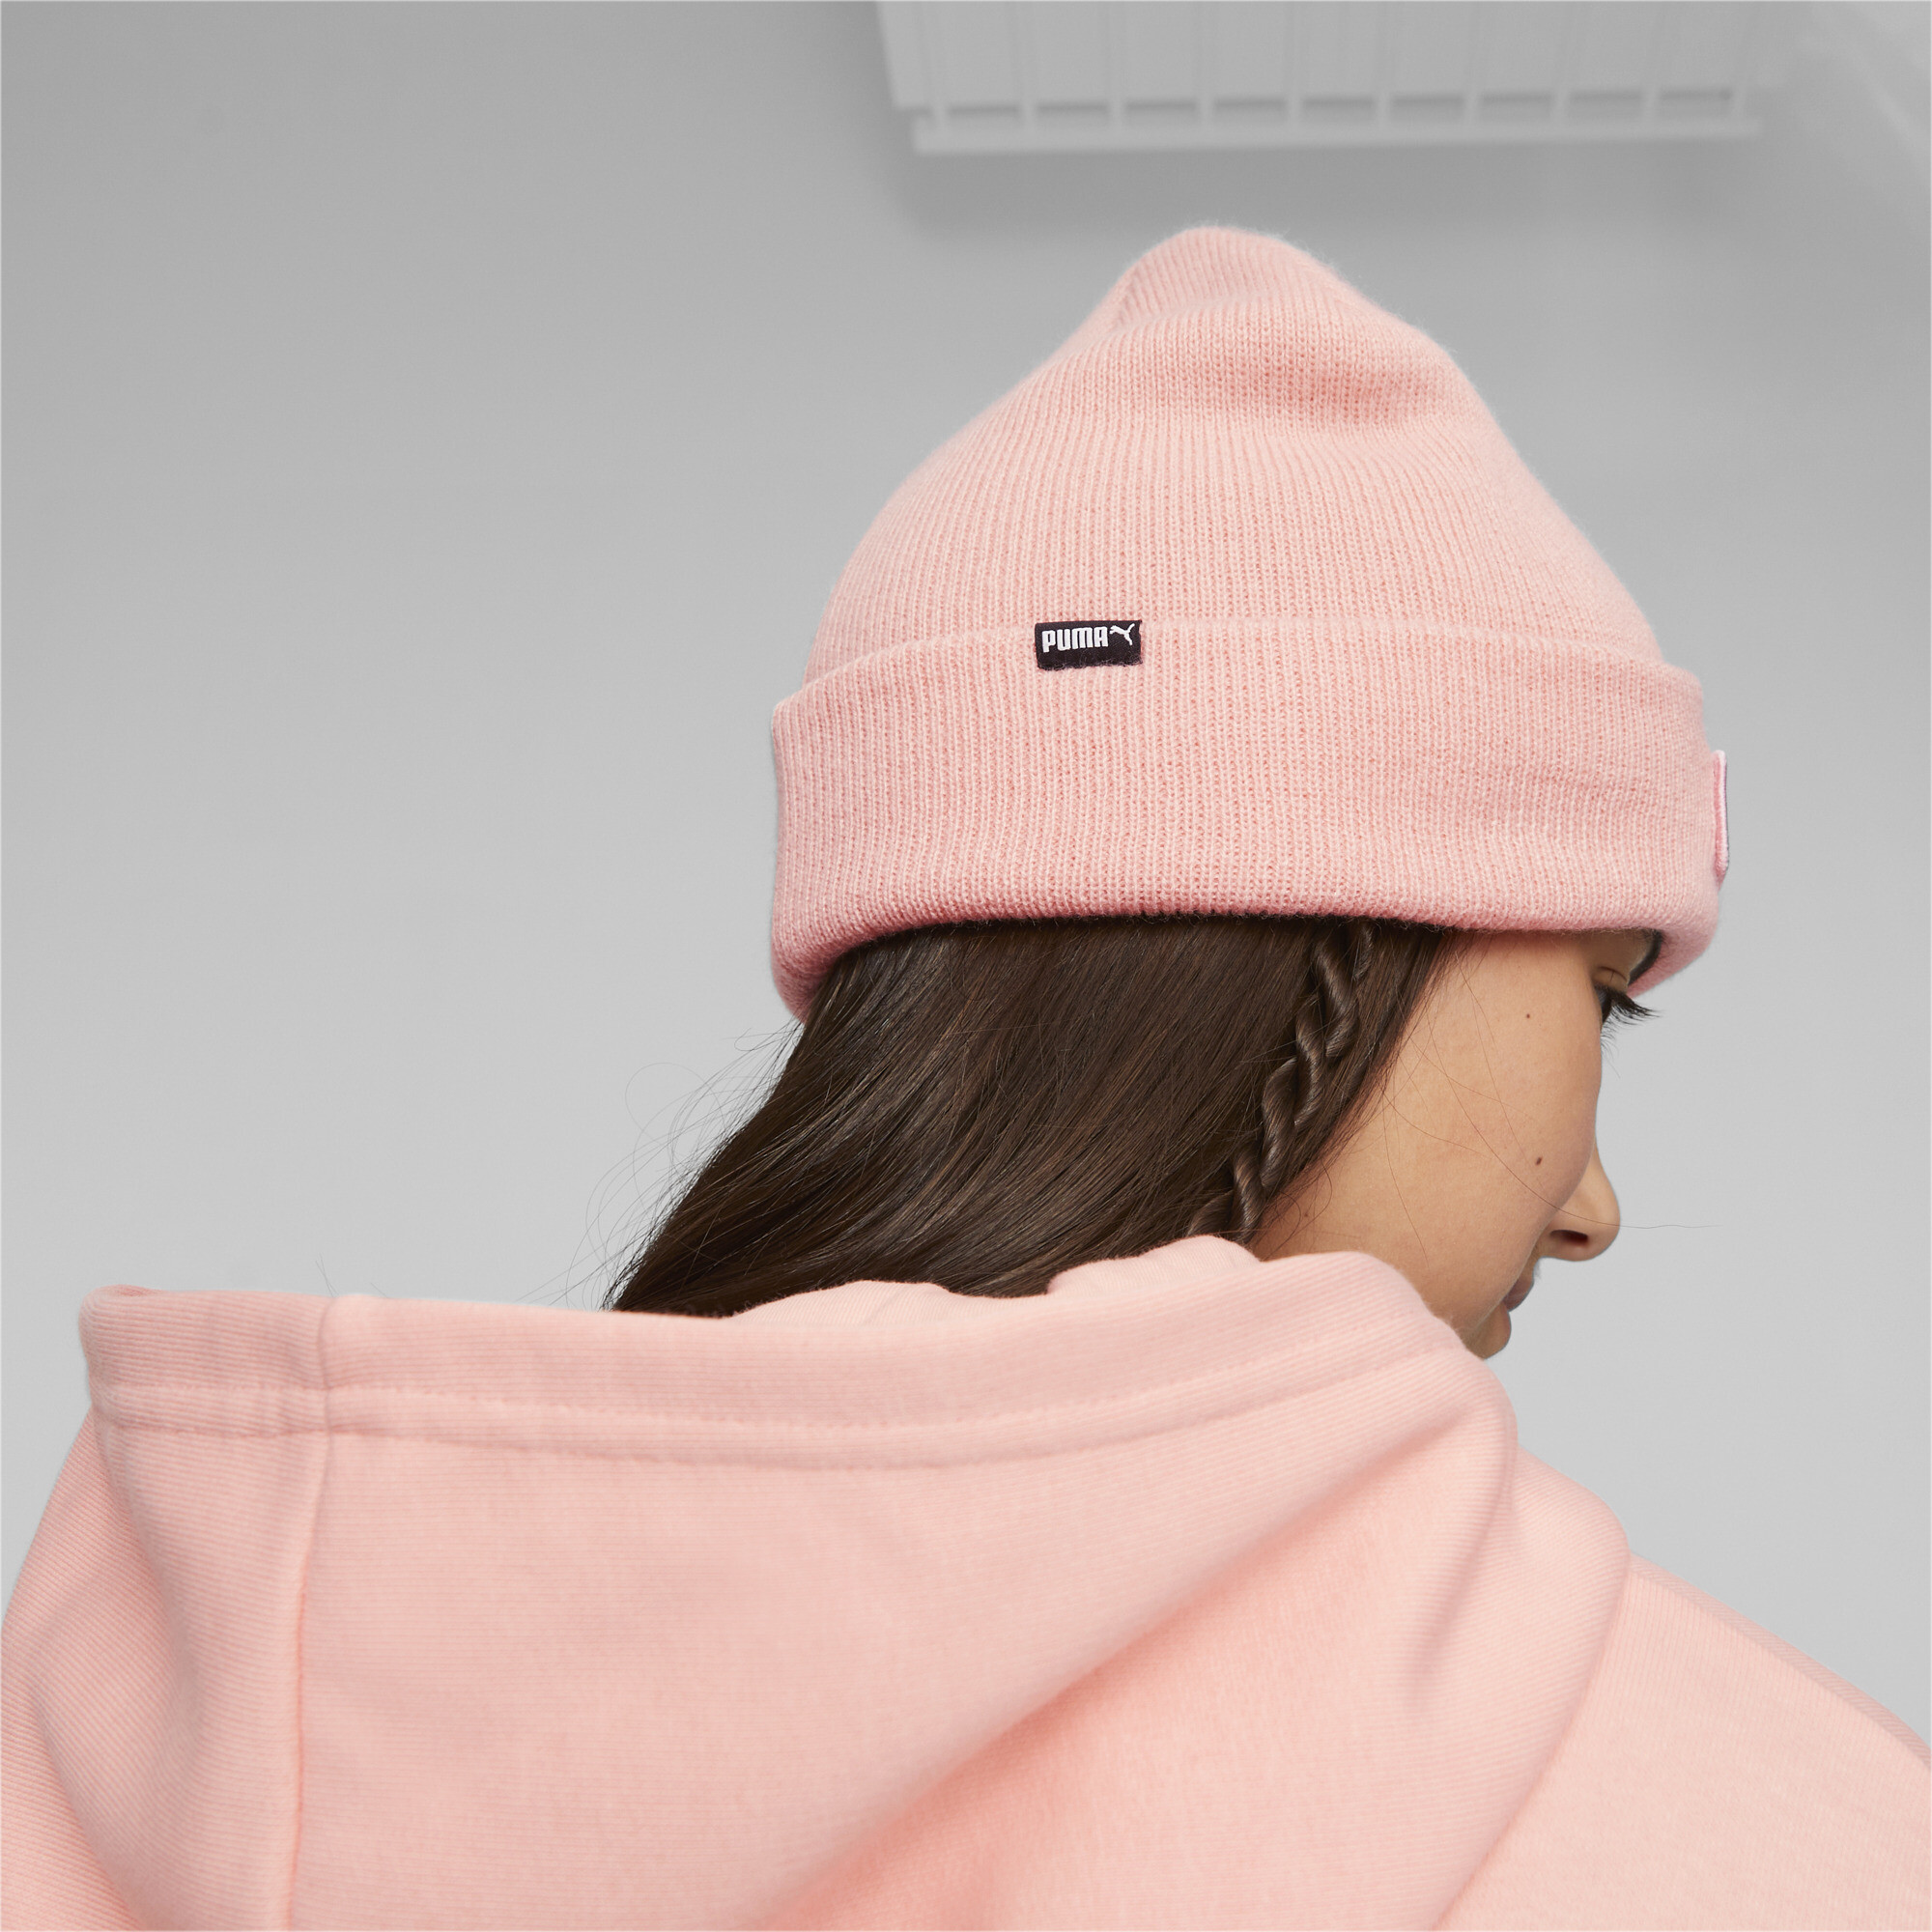 Puma Classic Cuff Youth Beanie Hat, Pink, Accessories